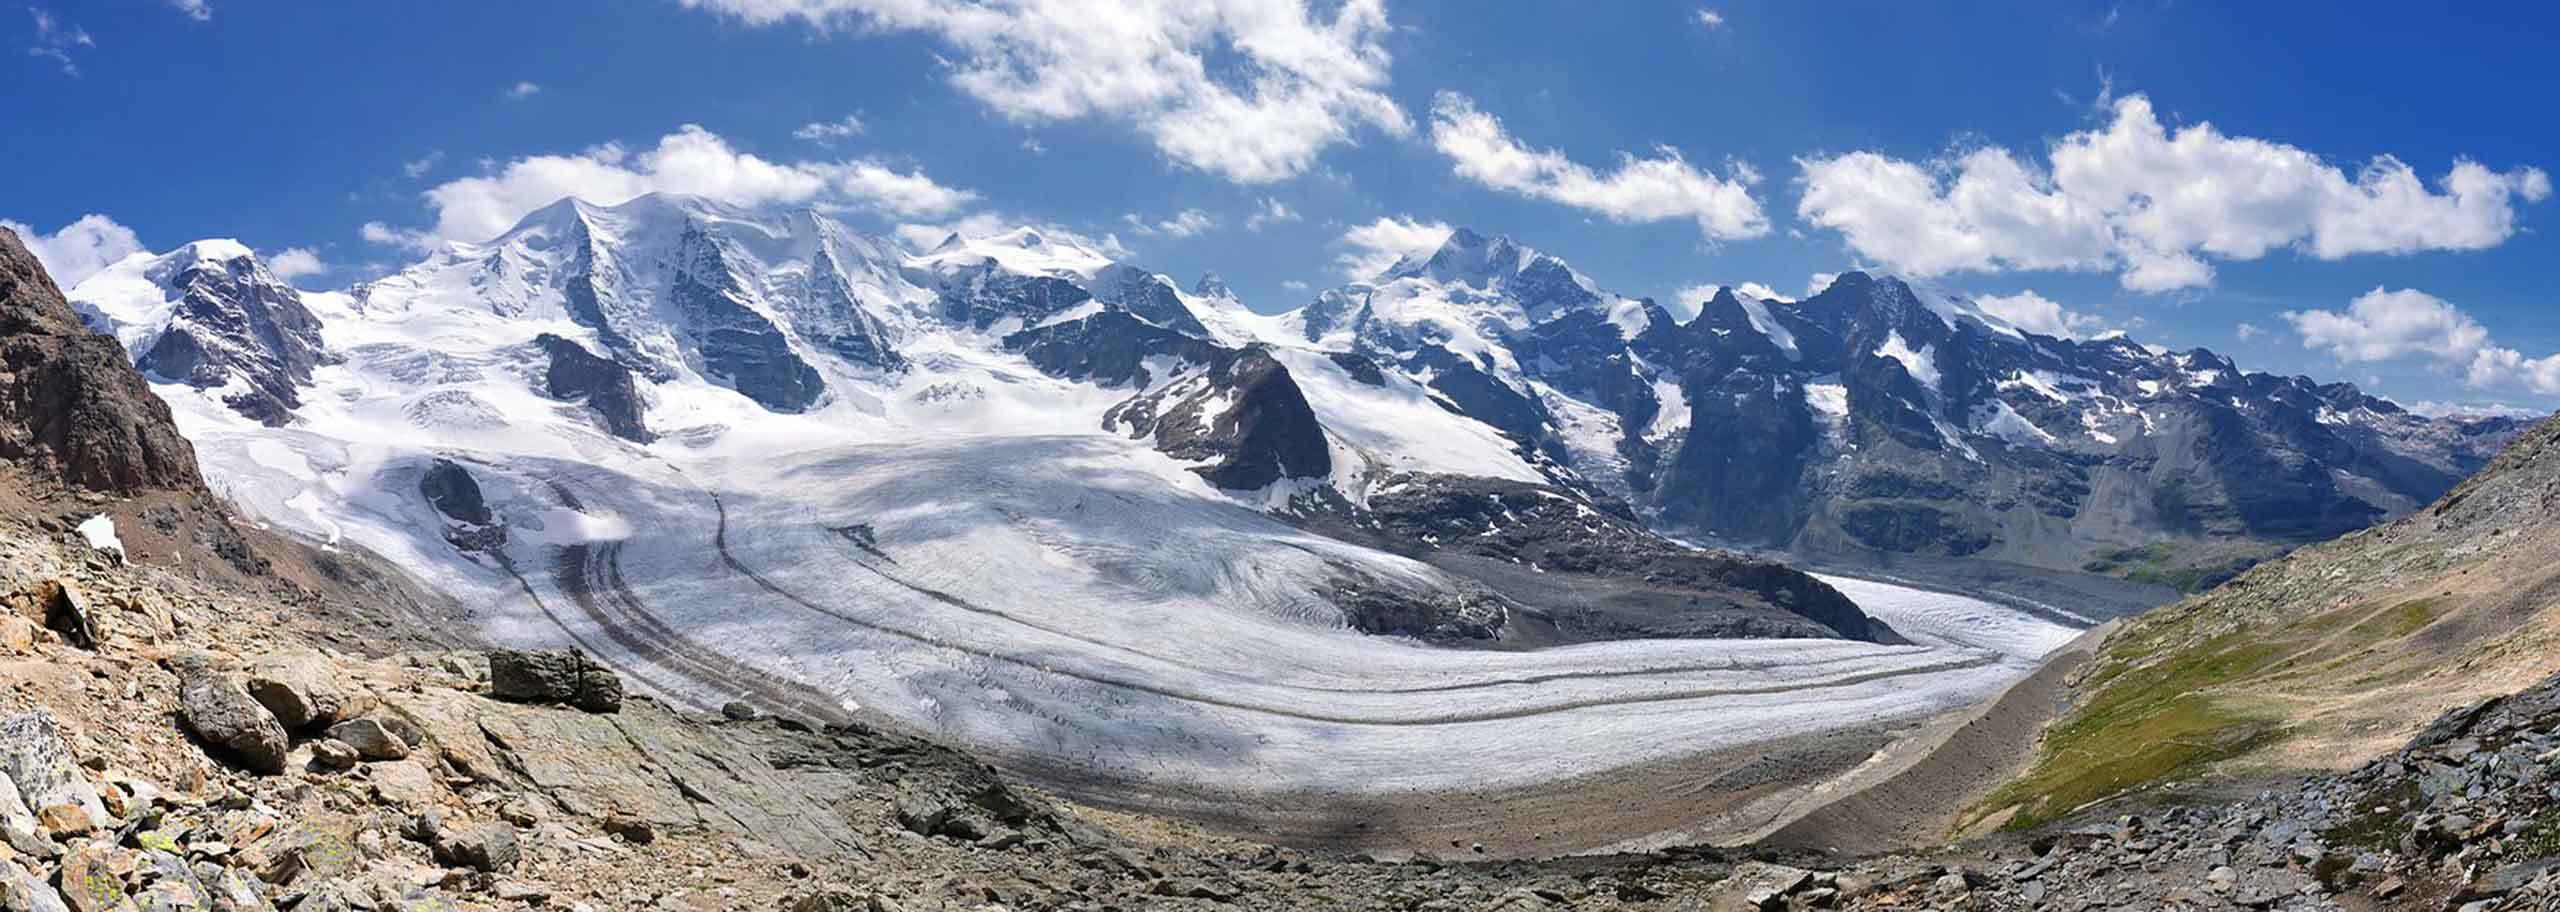 Guide Alpine Livigno - Photo by Hansueli Krapf